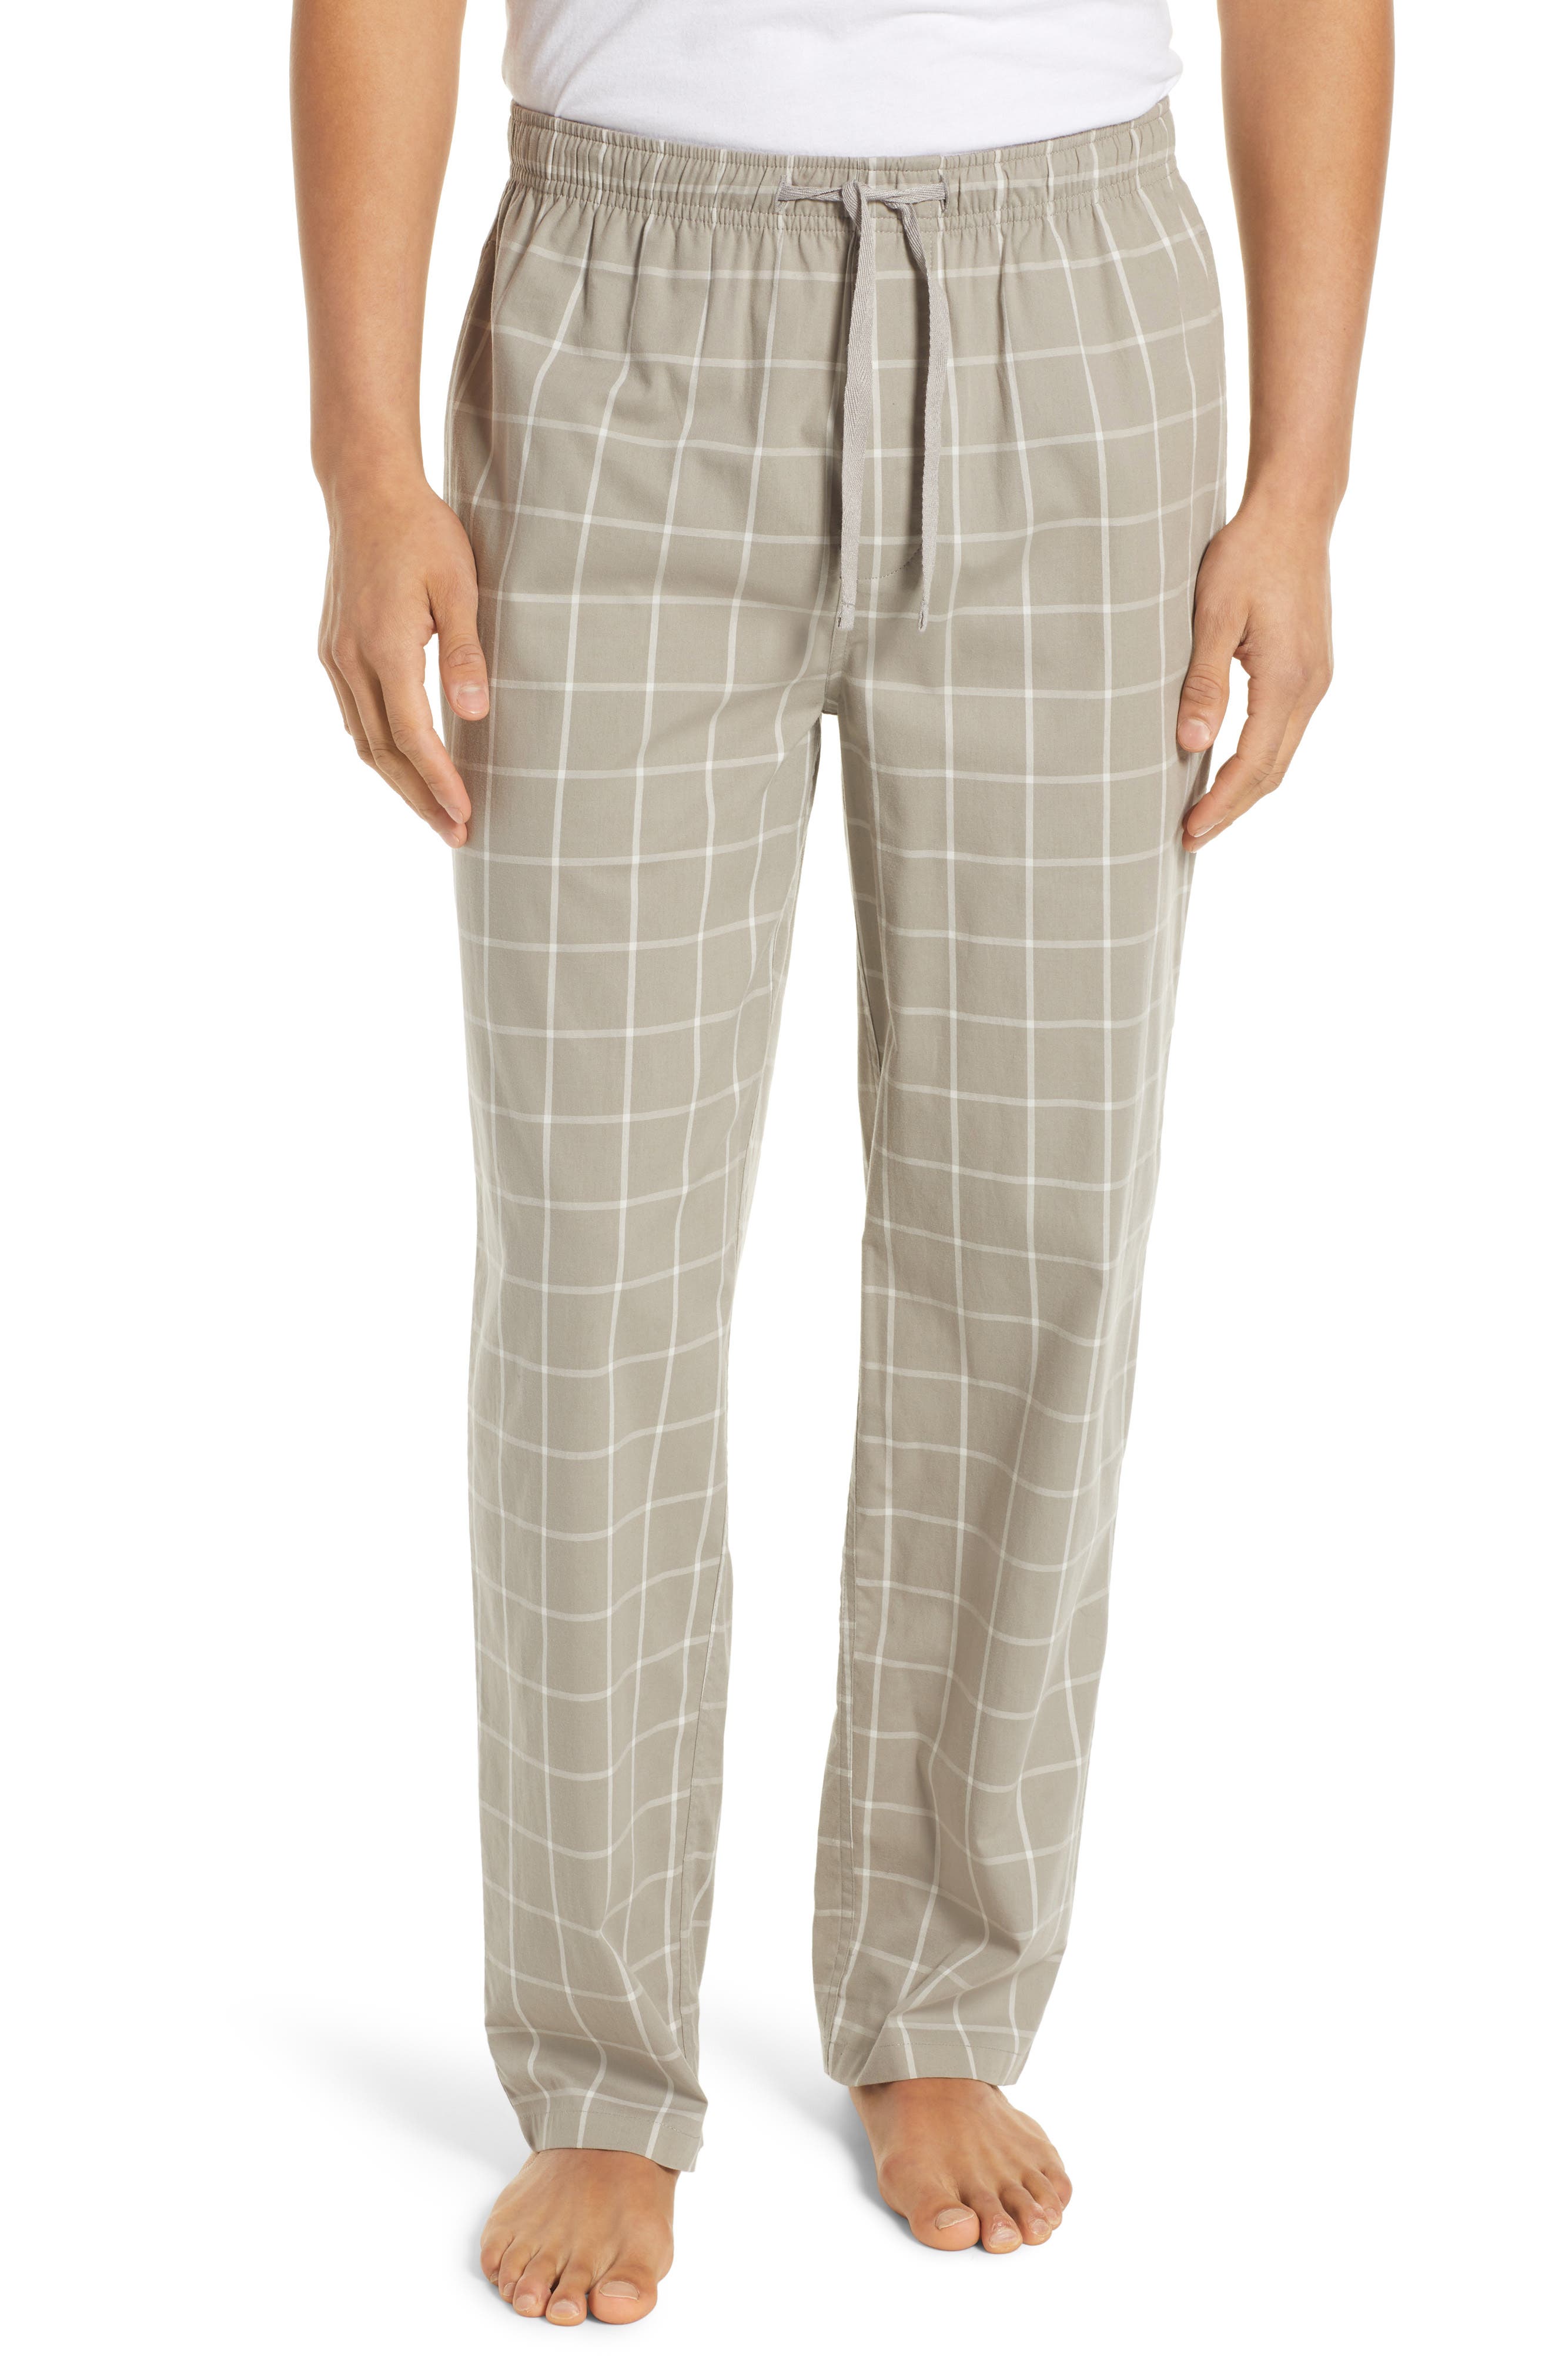 COMFORTABLE CLUB Mens Modal Lounge Pants/Pajama Bottoms